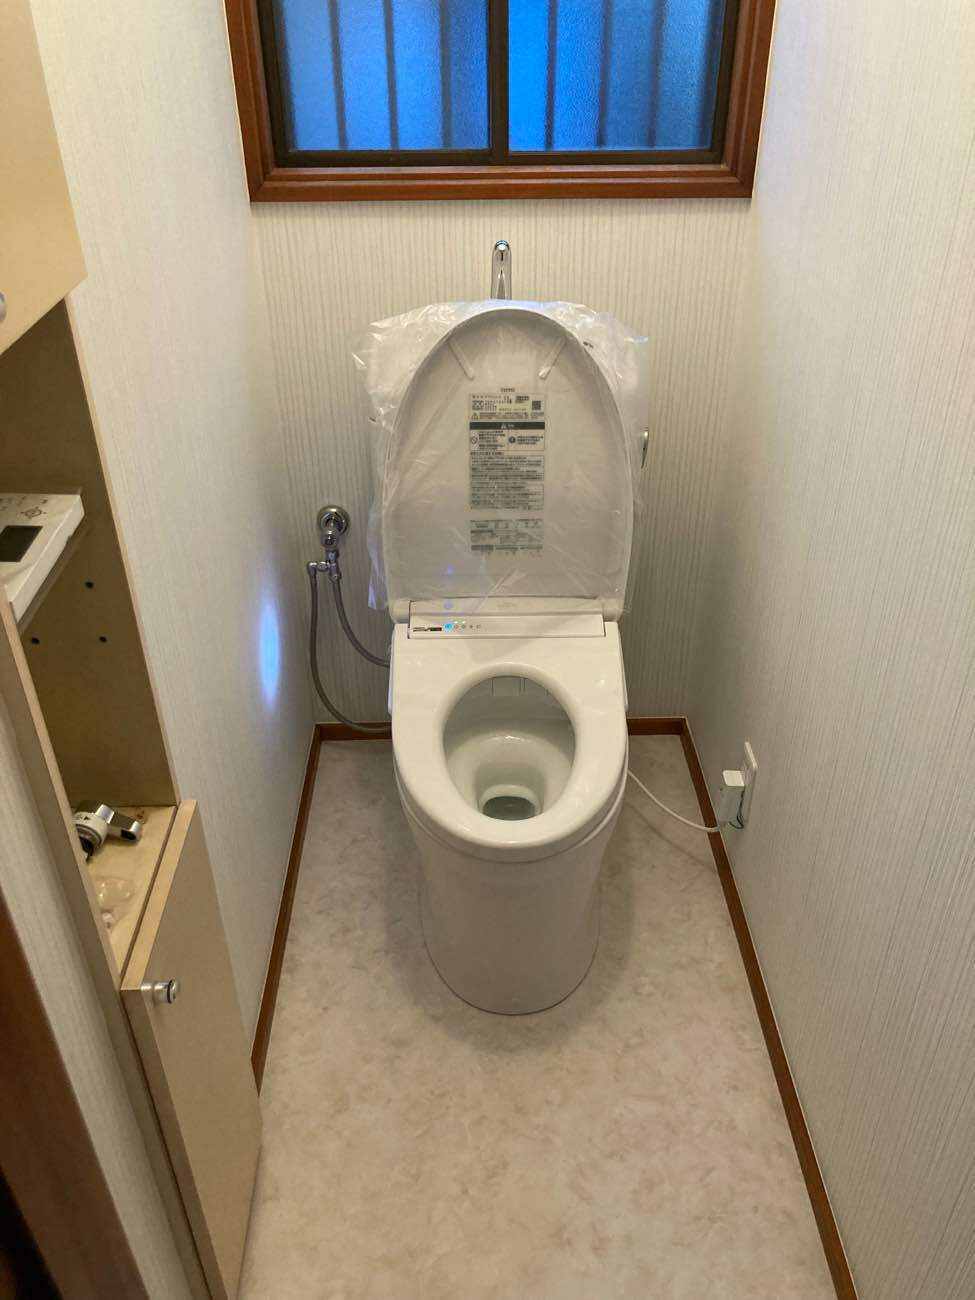 【埼玉県吉川市】O様邸トイレ交換工事が完了しました。TOTO ピュアレストQR 画像